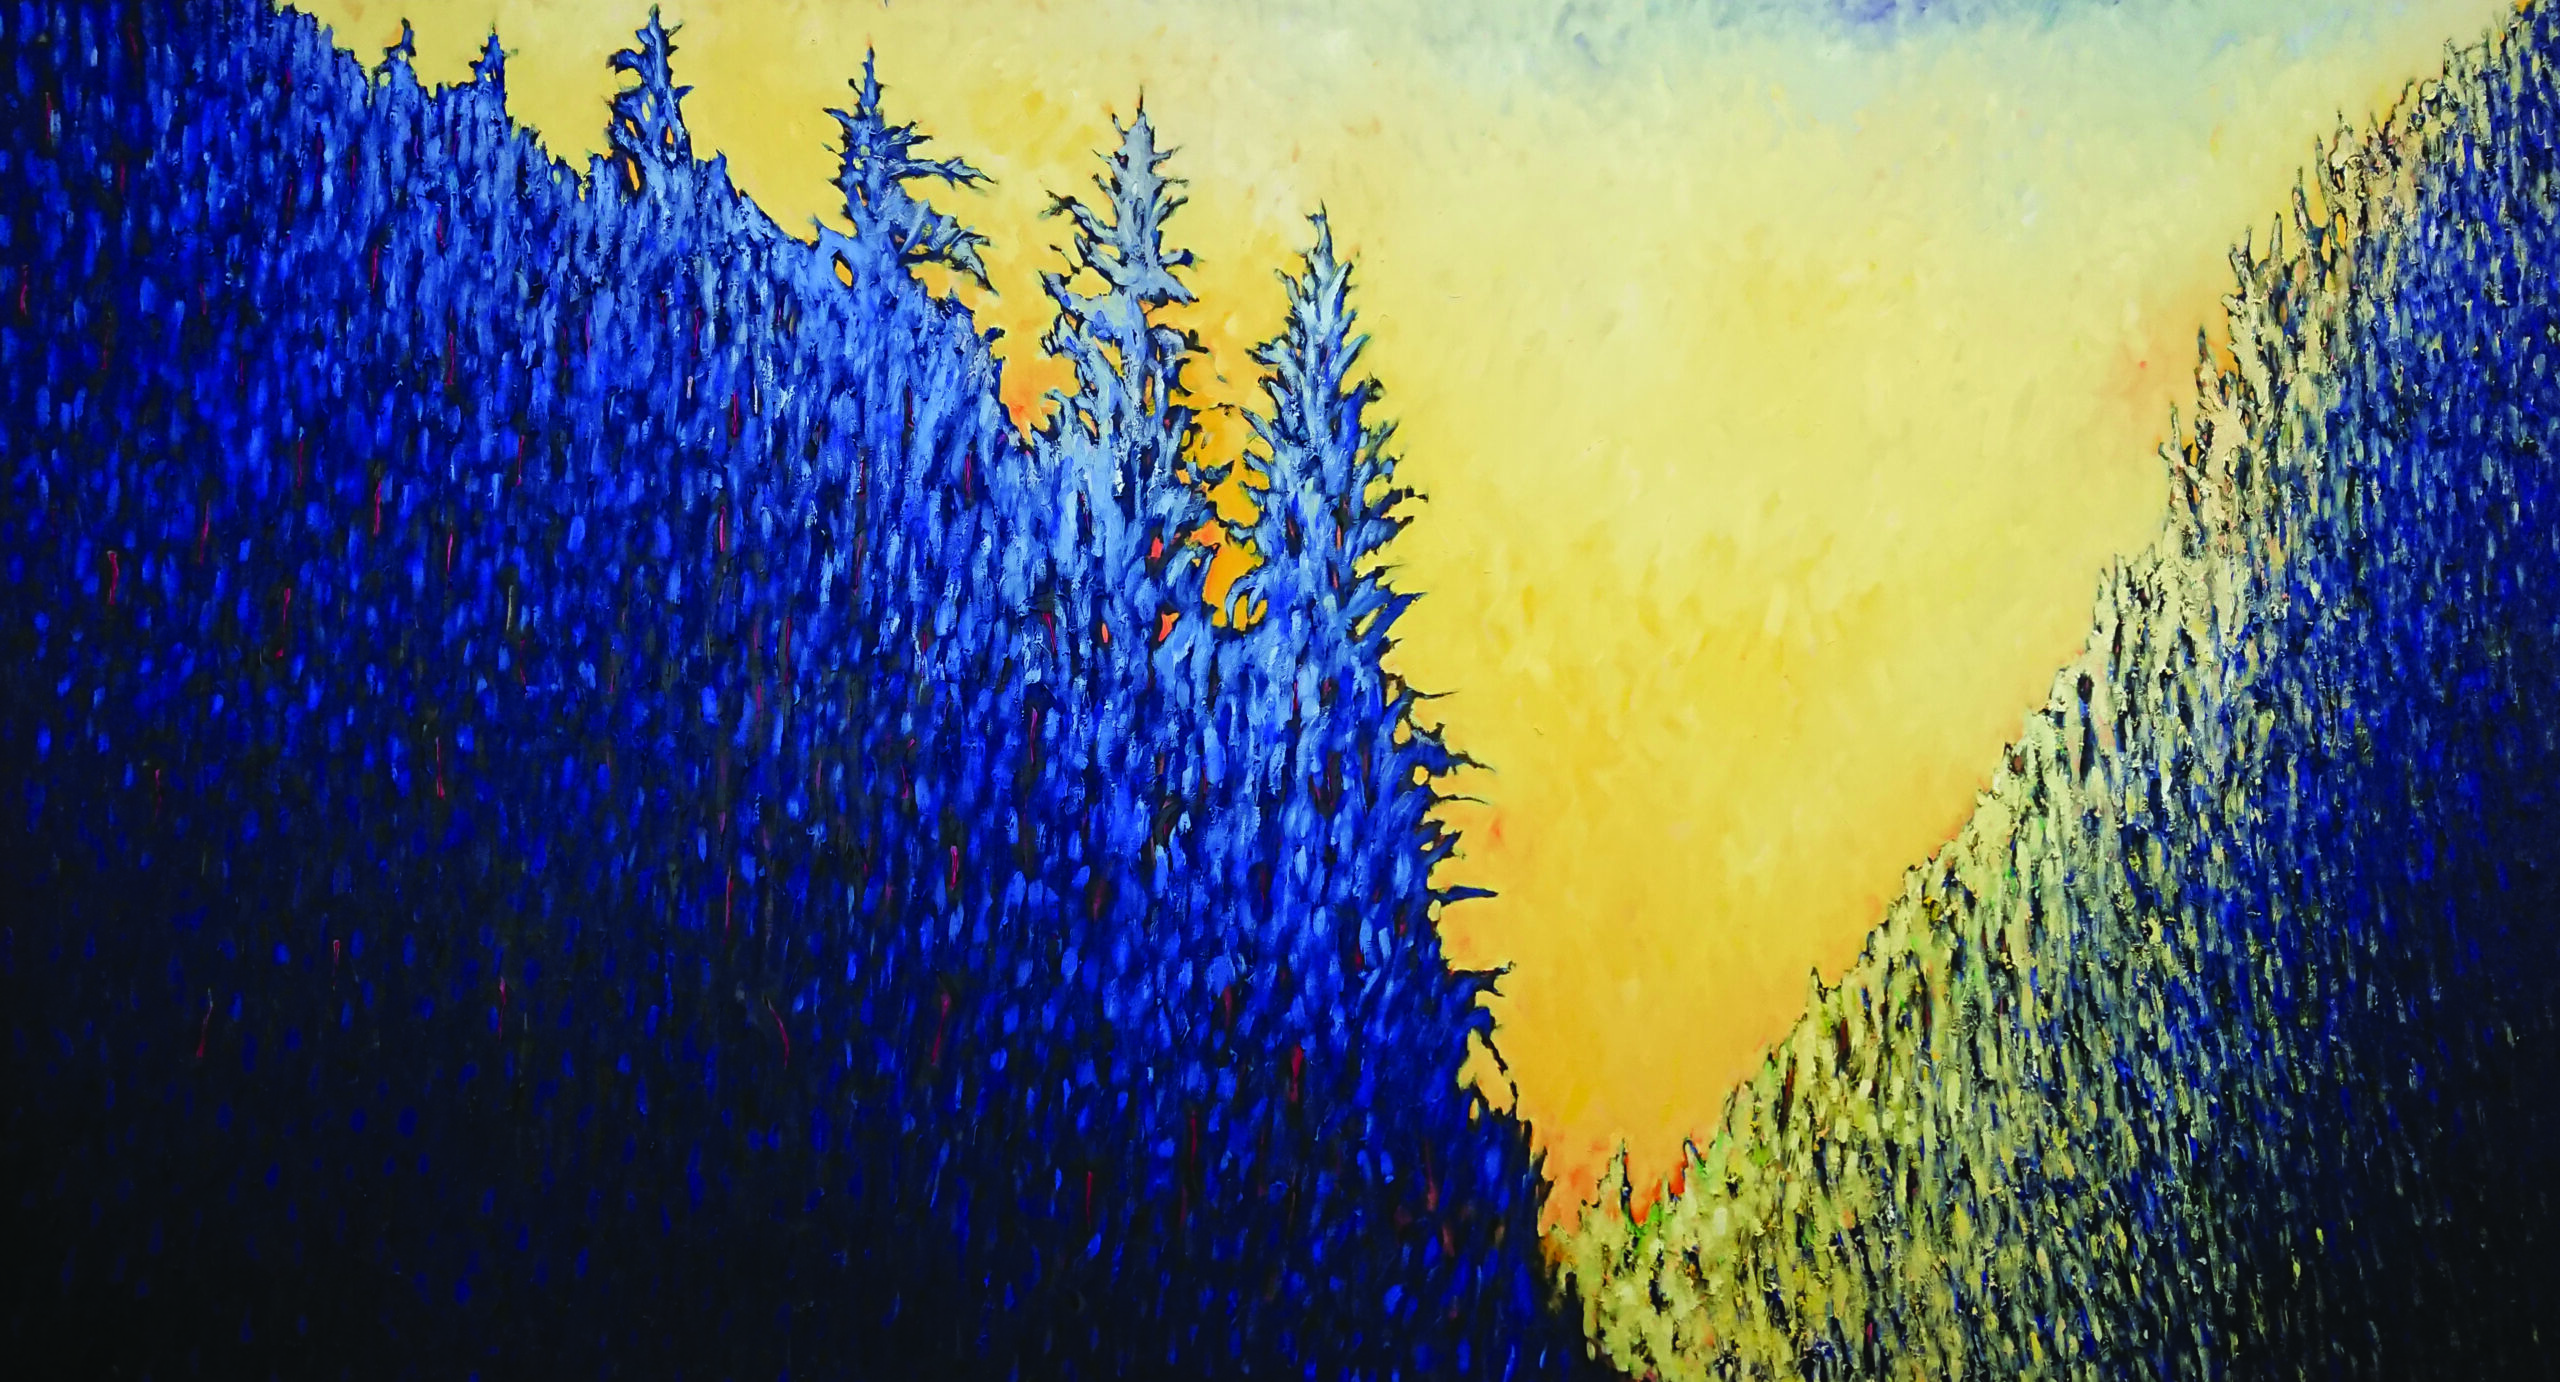 Reprodukcja obrazu Wschód słońca. Obraz prostokątny, w poziomie. Drzewa układające się w literę V. Niebo jest żółte, Po lewej stronie dzrzewa są niebieskie a po prawej żółto błękitne.